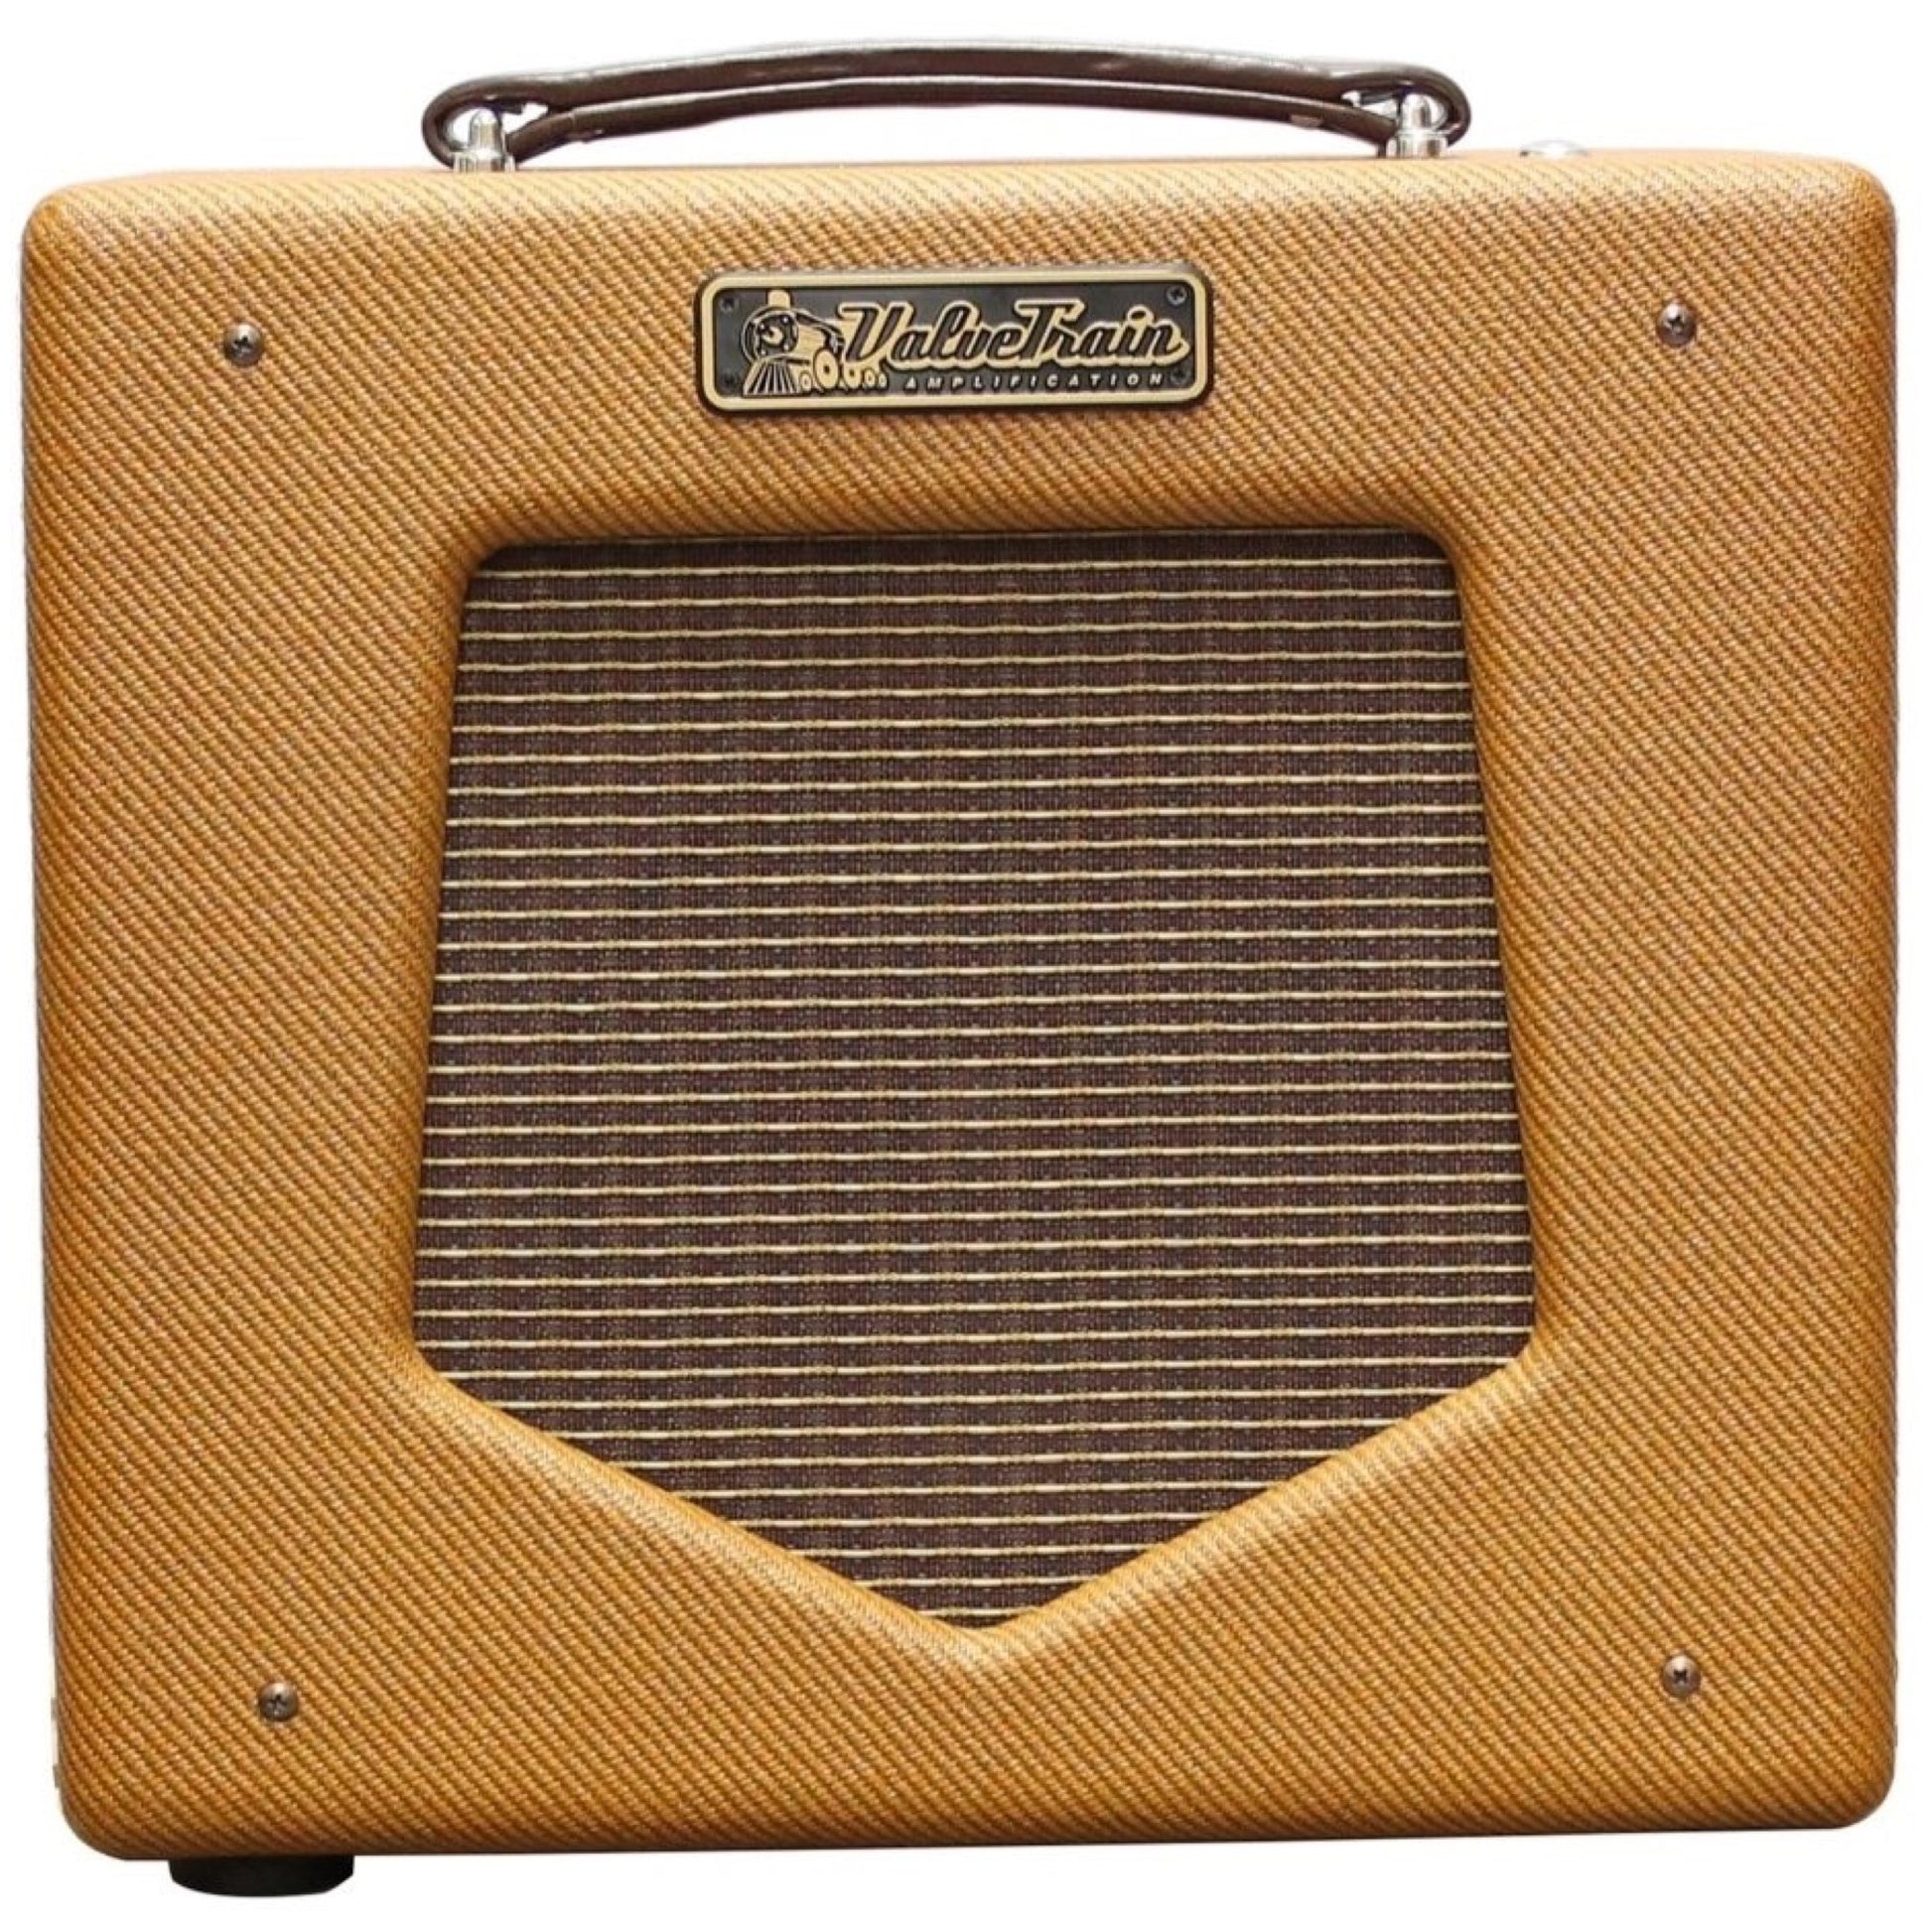 ValveTrain 205C Guitar Combo Amplifier (5 Watts, 1x8 Inch)